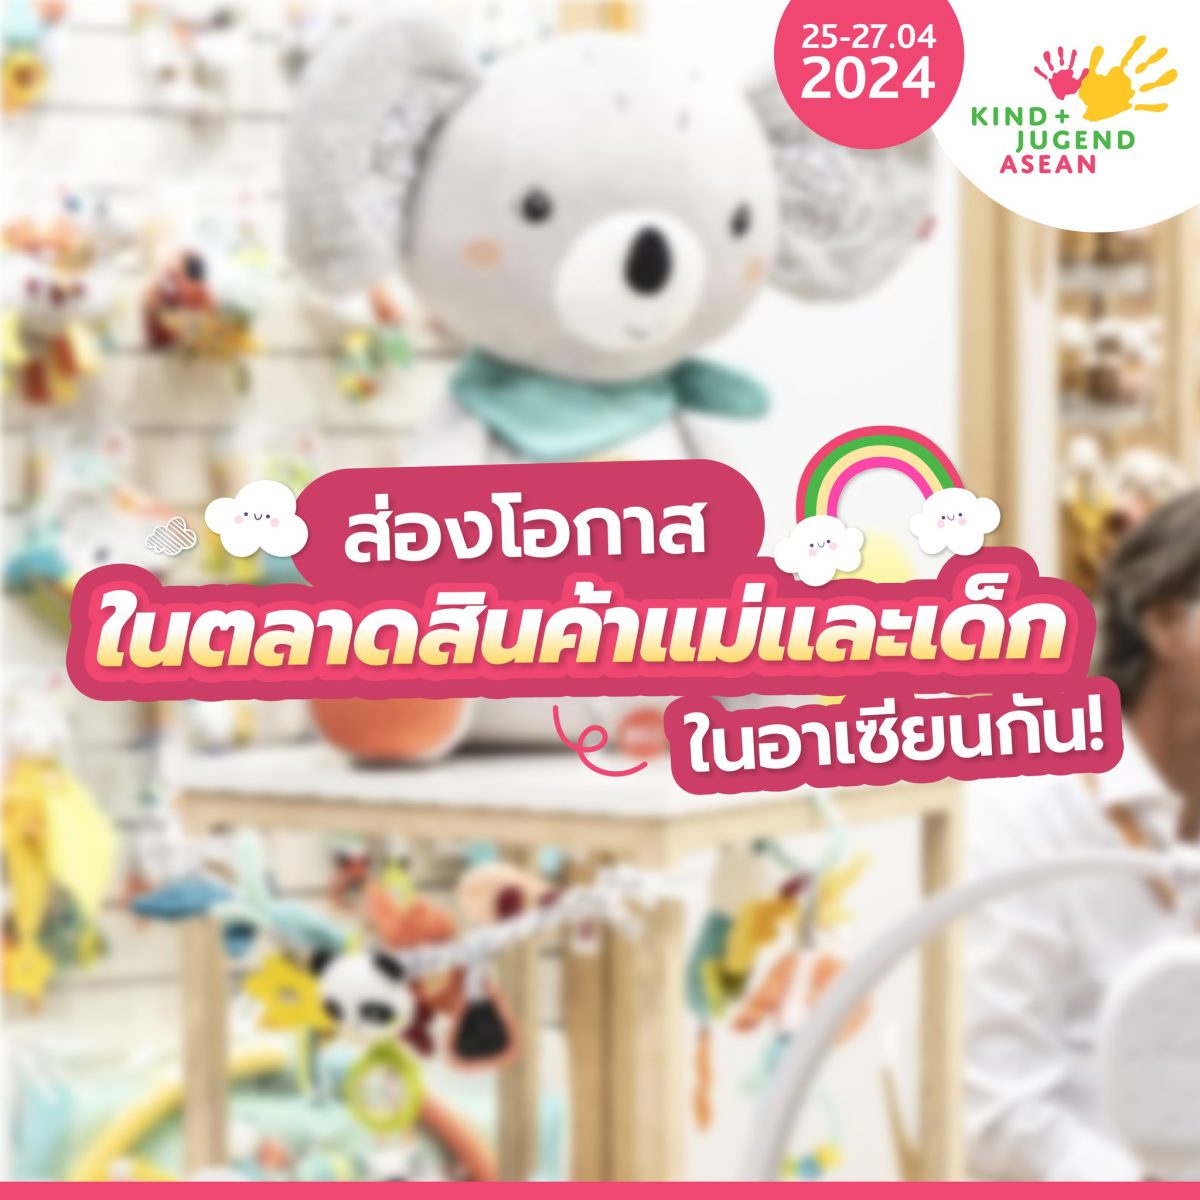 นับถอยหลังเตรียมพบกับ Kind Jugend ASEAN 2024 ระหว่างวันที่ 25 - 27 เมษายน 2567 ลงทะเบียนล่วงหน้า ลุ้นรับ Art Toy จาก POPMART